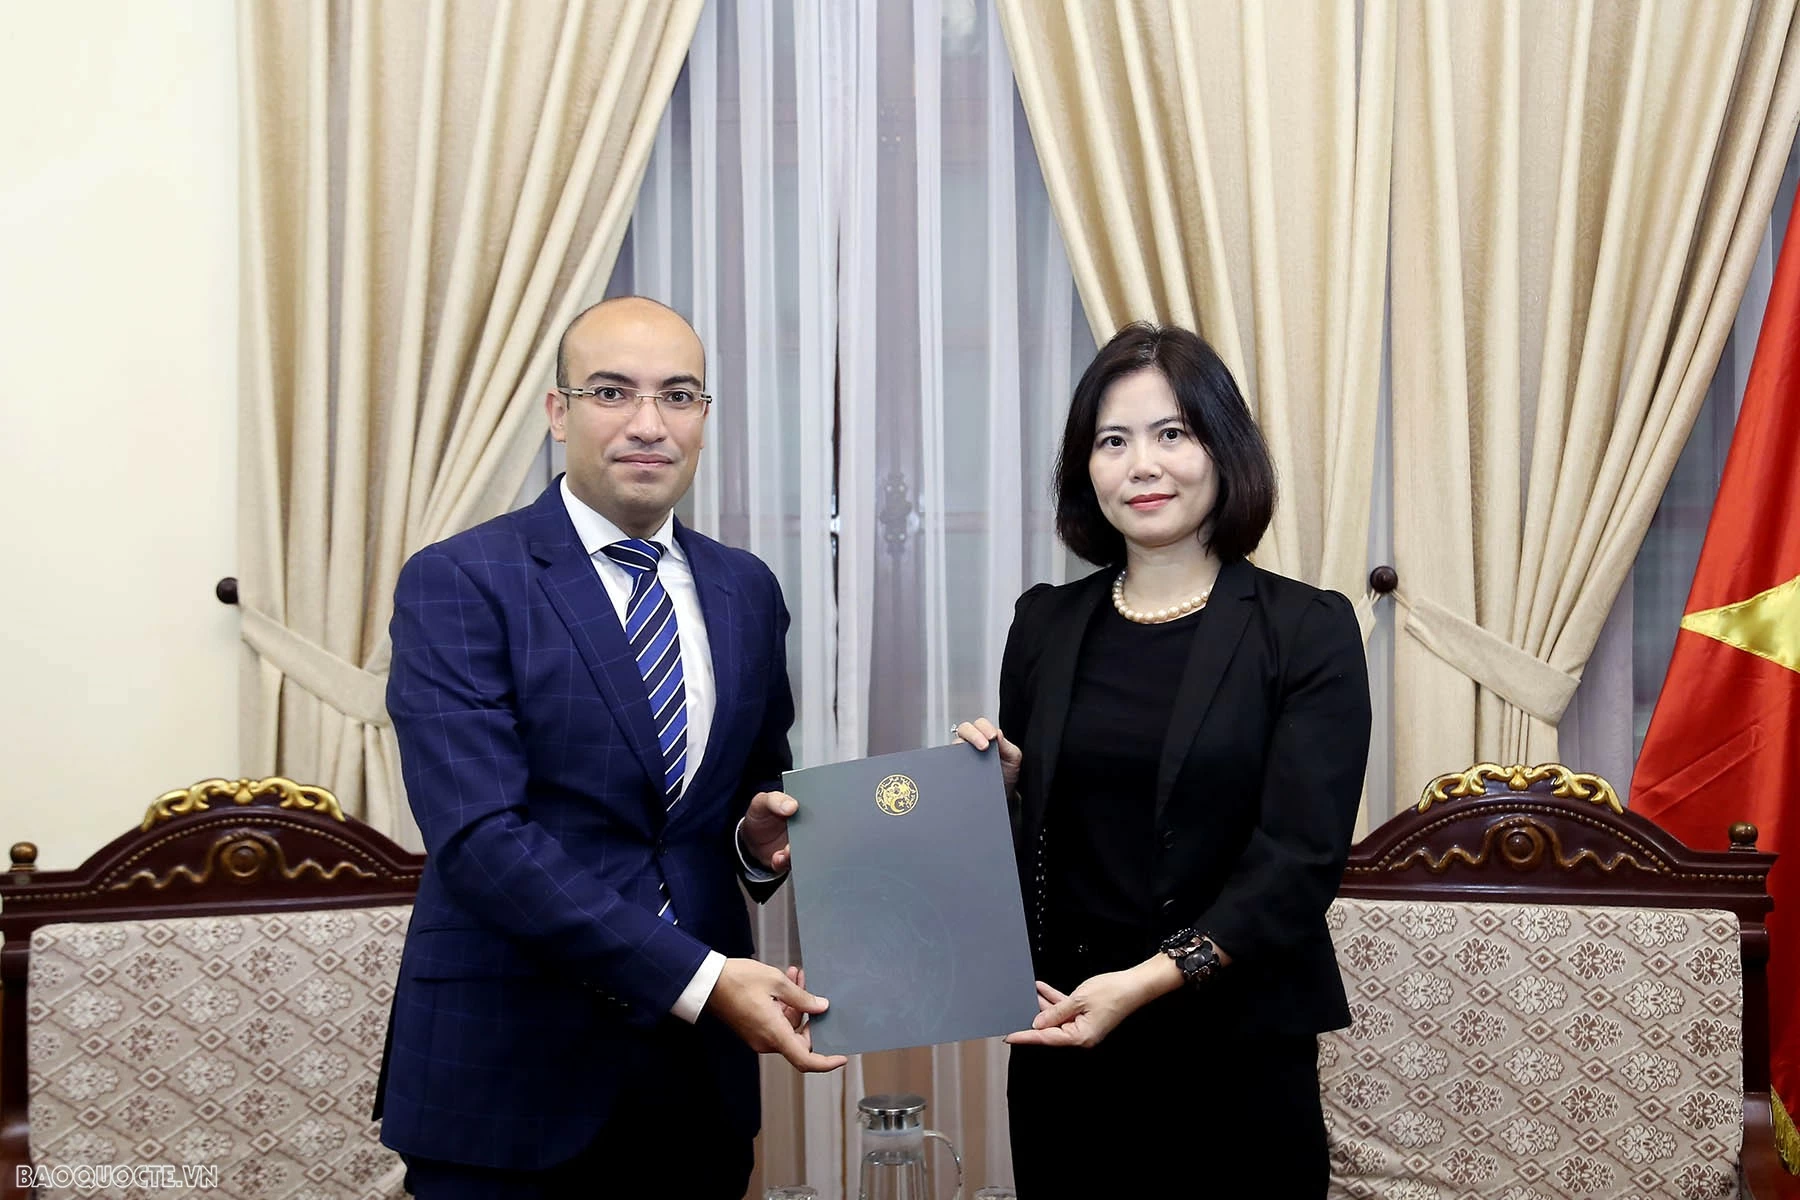 Tiếp nhận bản sao Thư ủy nhiệm bổ nhiệm Đại sứ Algérie tại Việt Nam